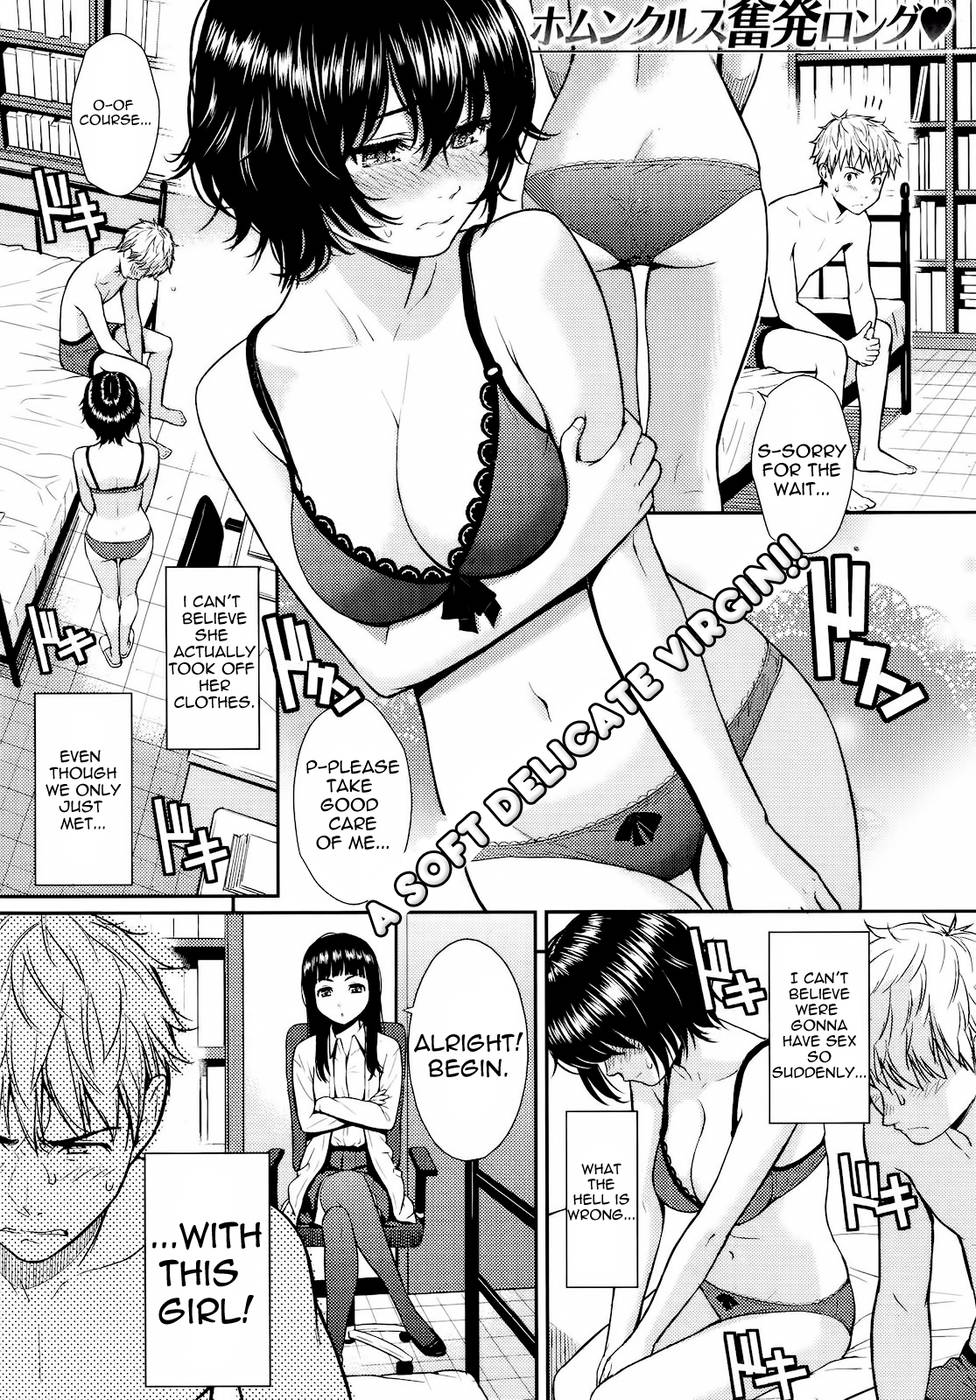 Free hentai manga scans online